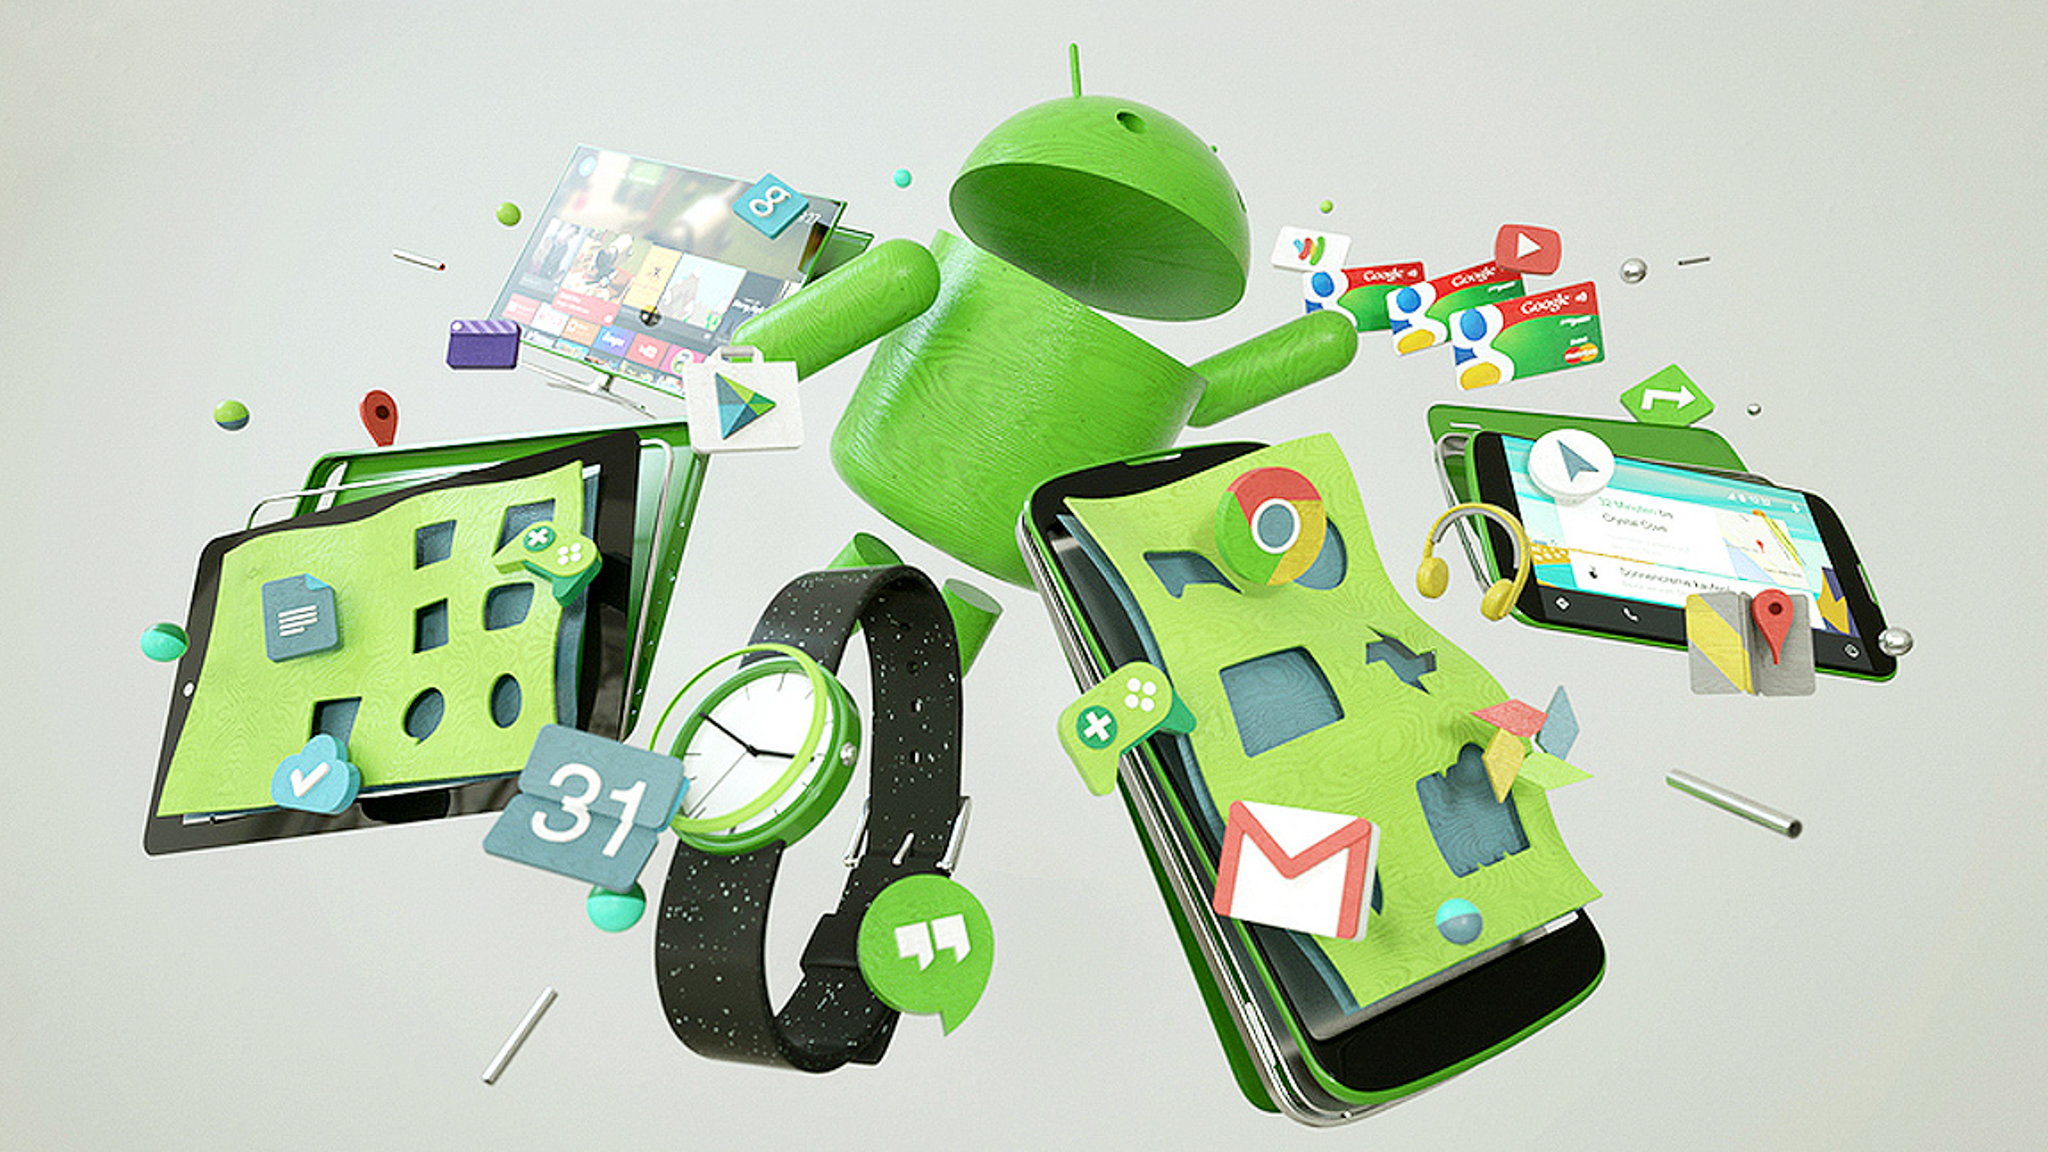 Toy android. Андроид игрушка. Игрушка андроид зеленый робот. Интеллектуальная андроид игрушки для детей. Красивые логические игрушки андроид.